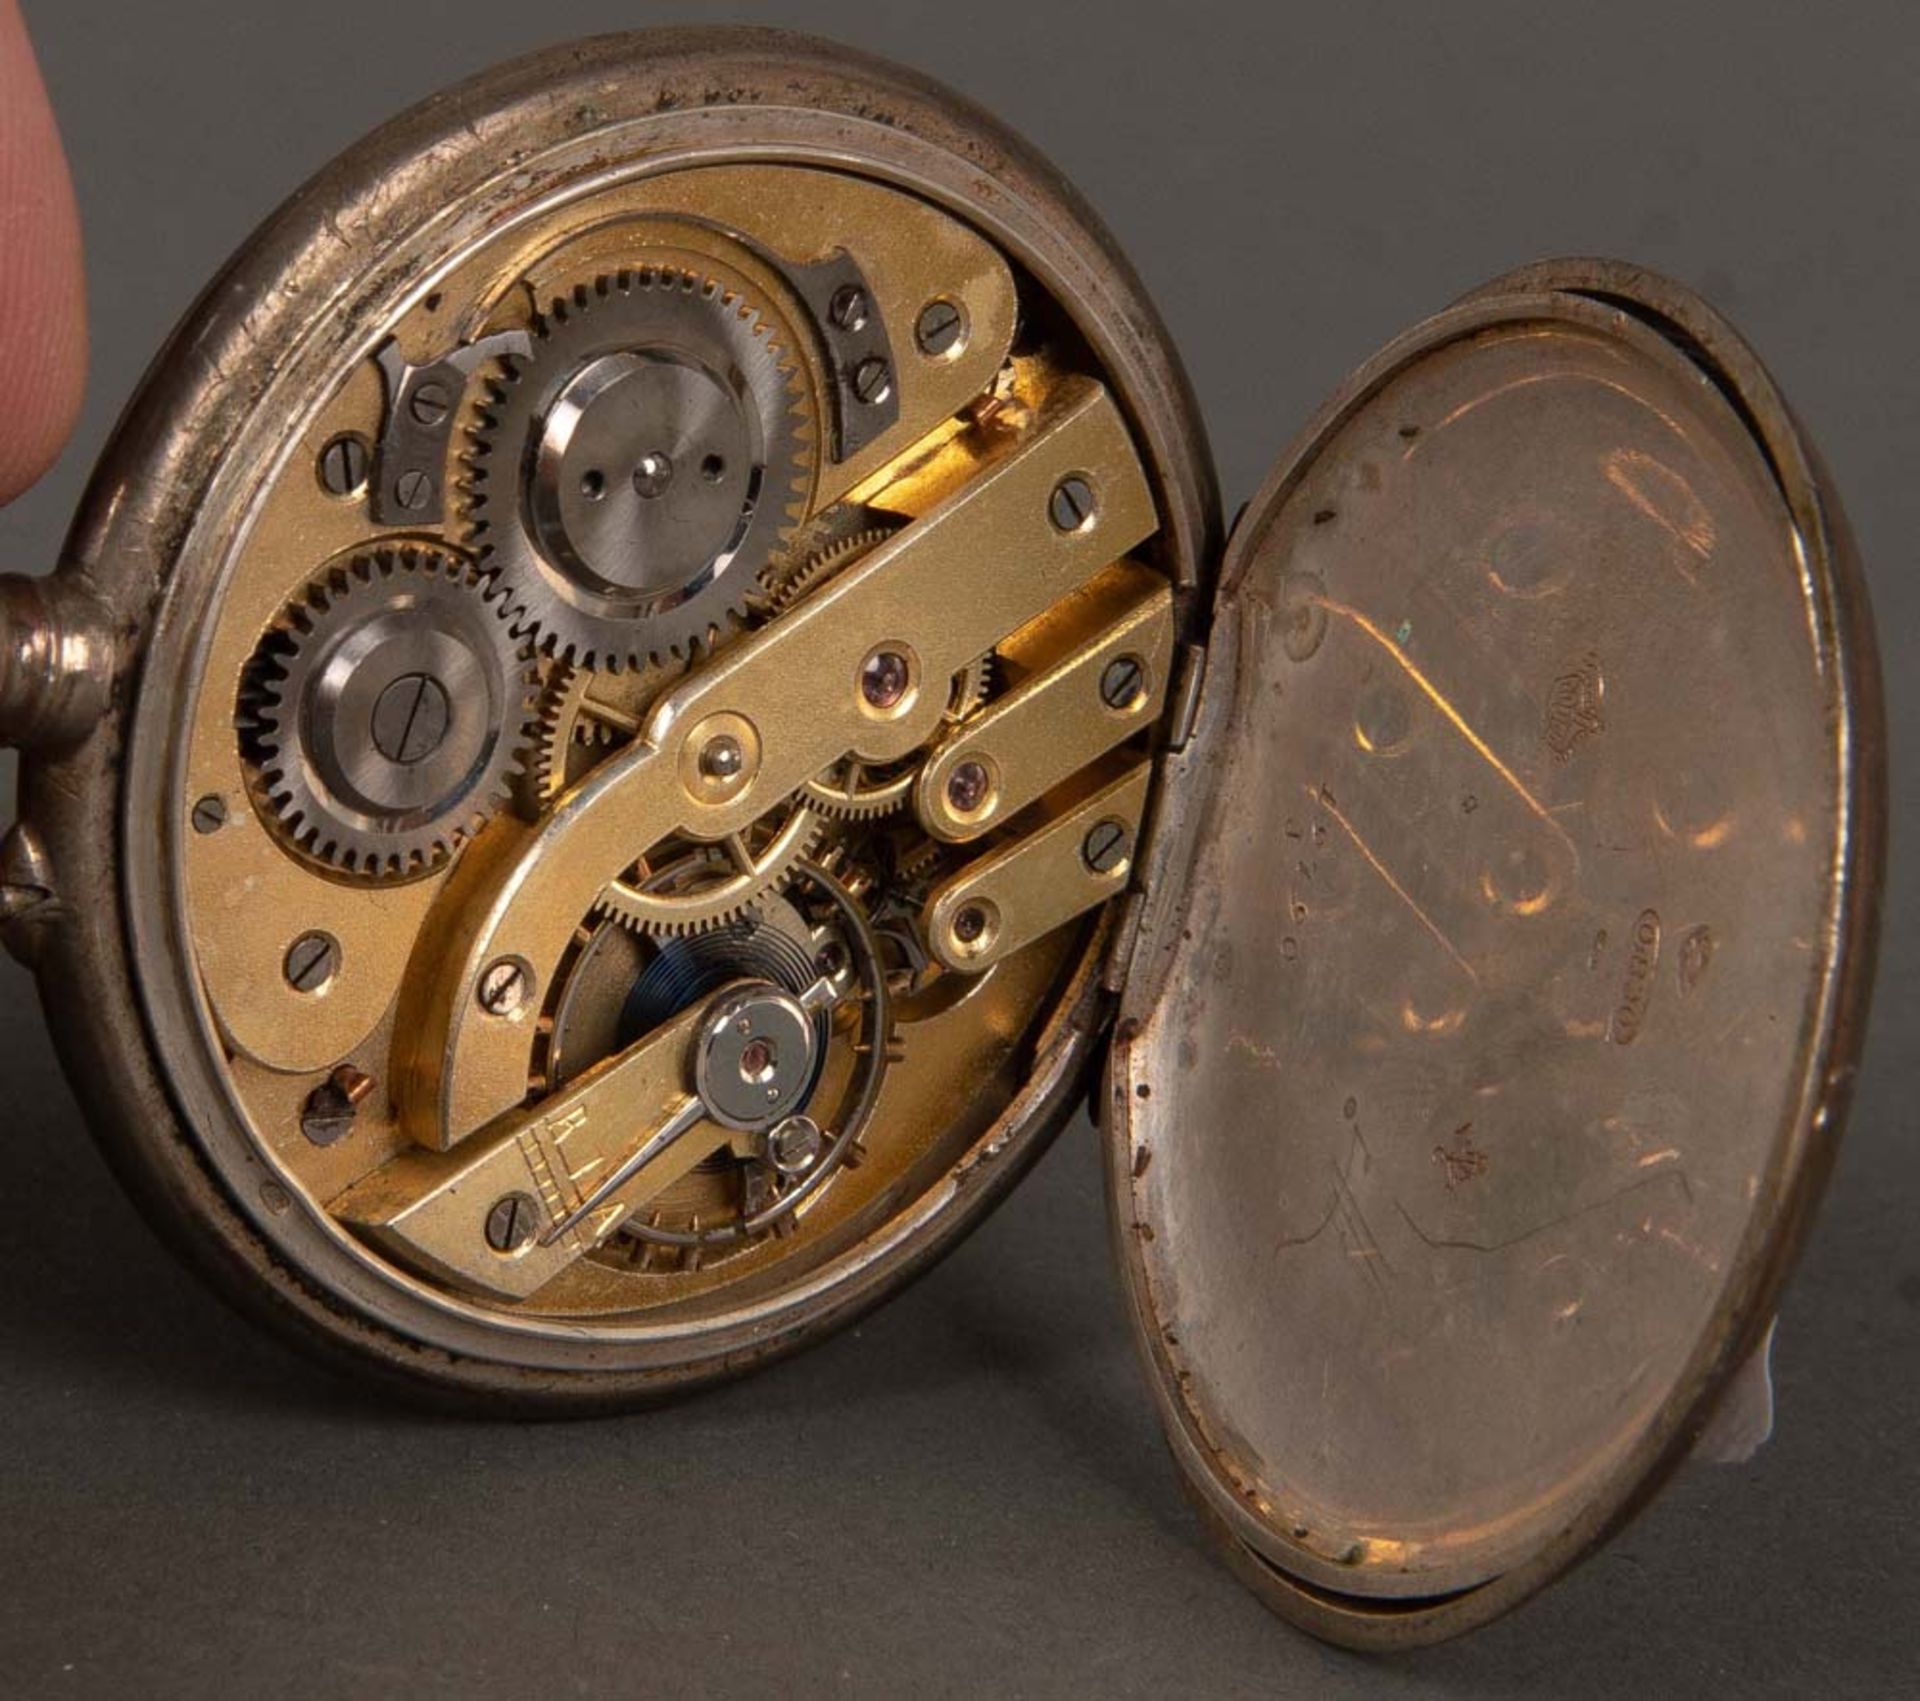 Zwei Taschenuhren. Silbergehäuse. Eine davon mit Spindelwerk, verso bez. „Breguet Paris 1801“. ( - Bild 3 aus 3